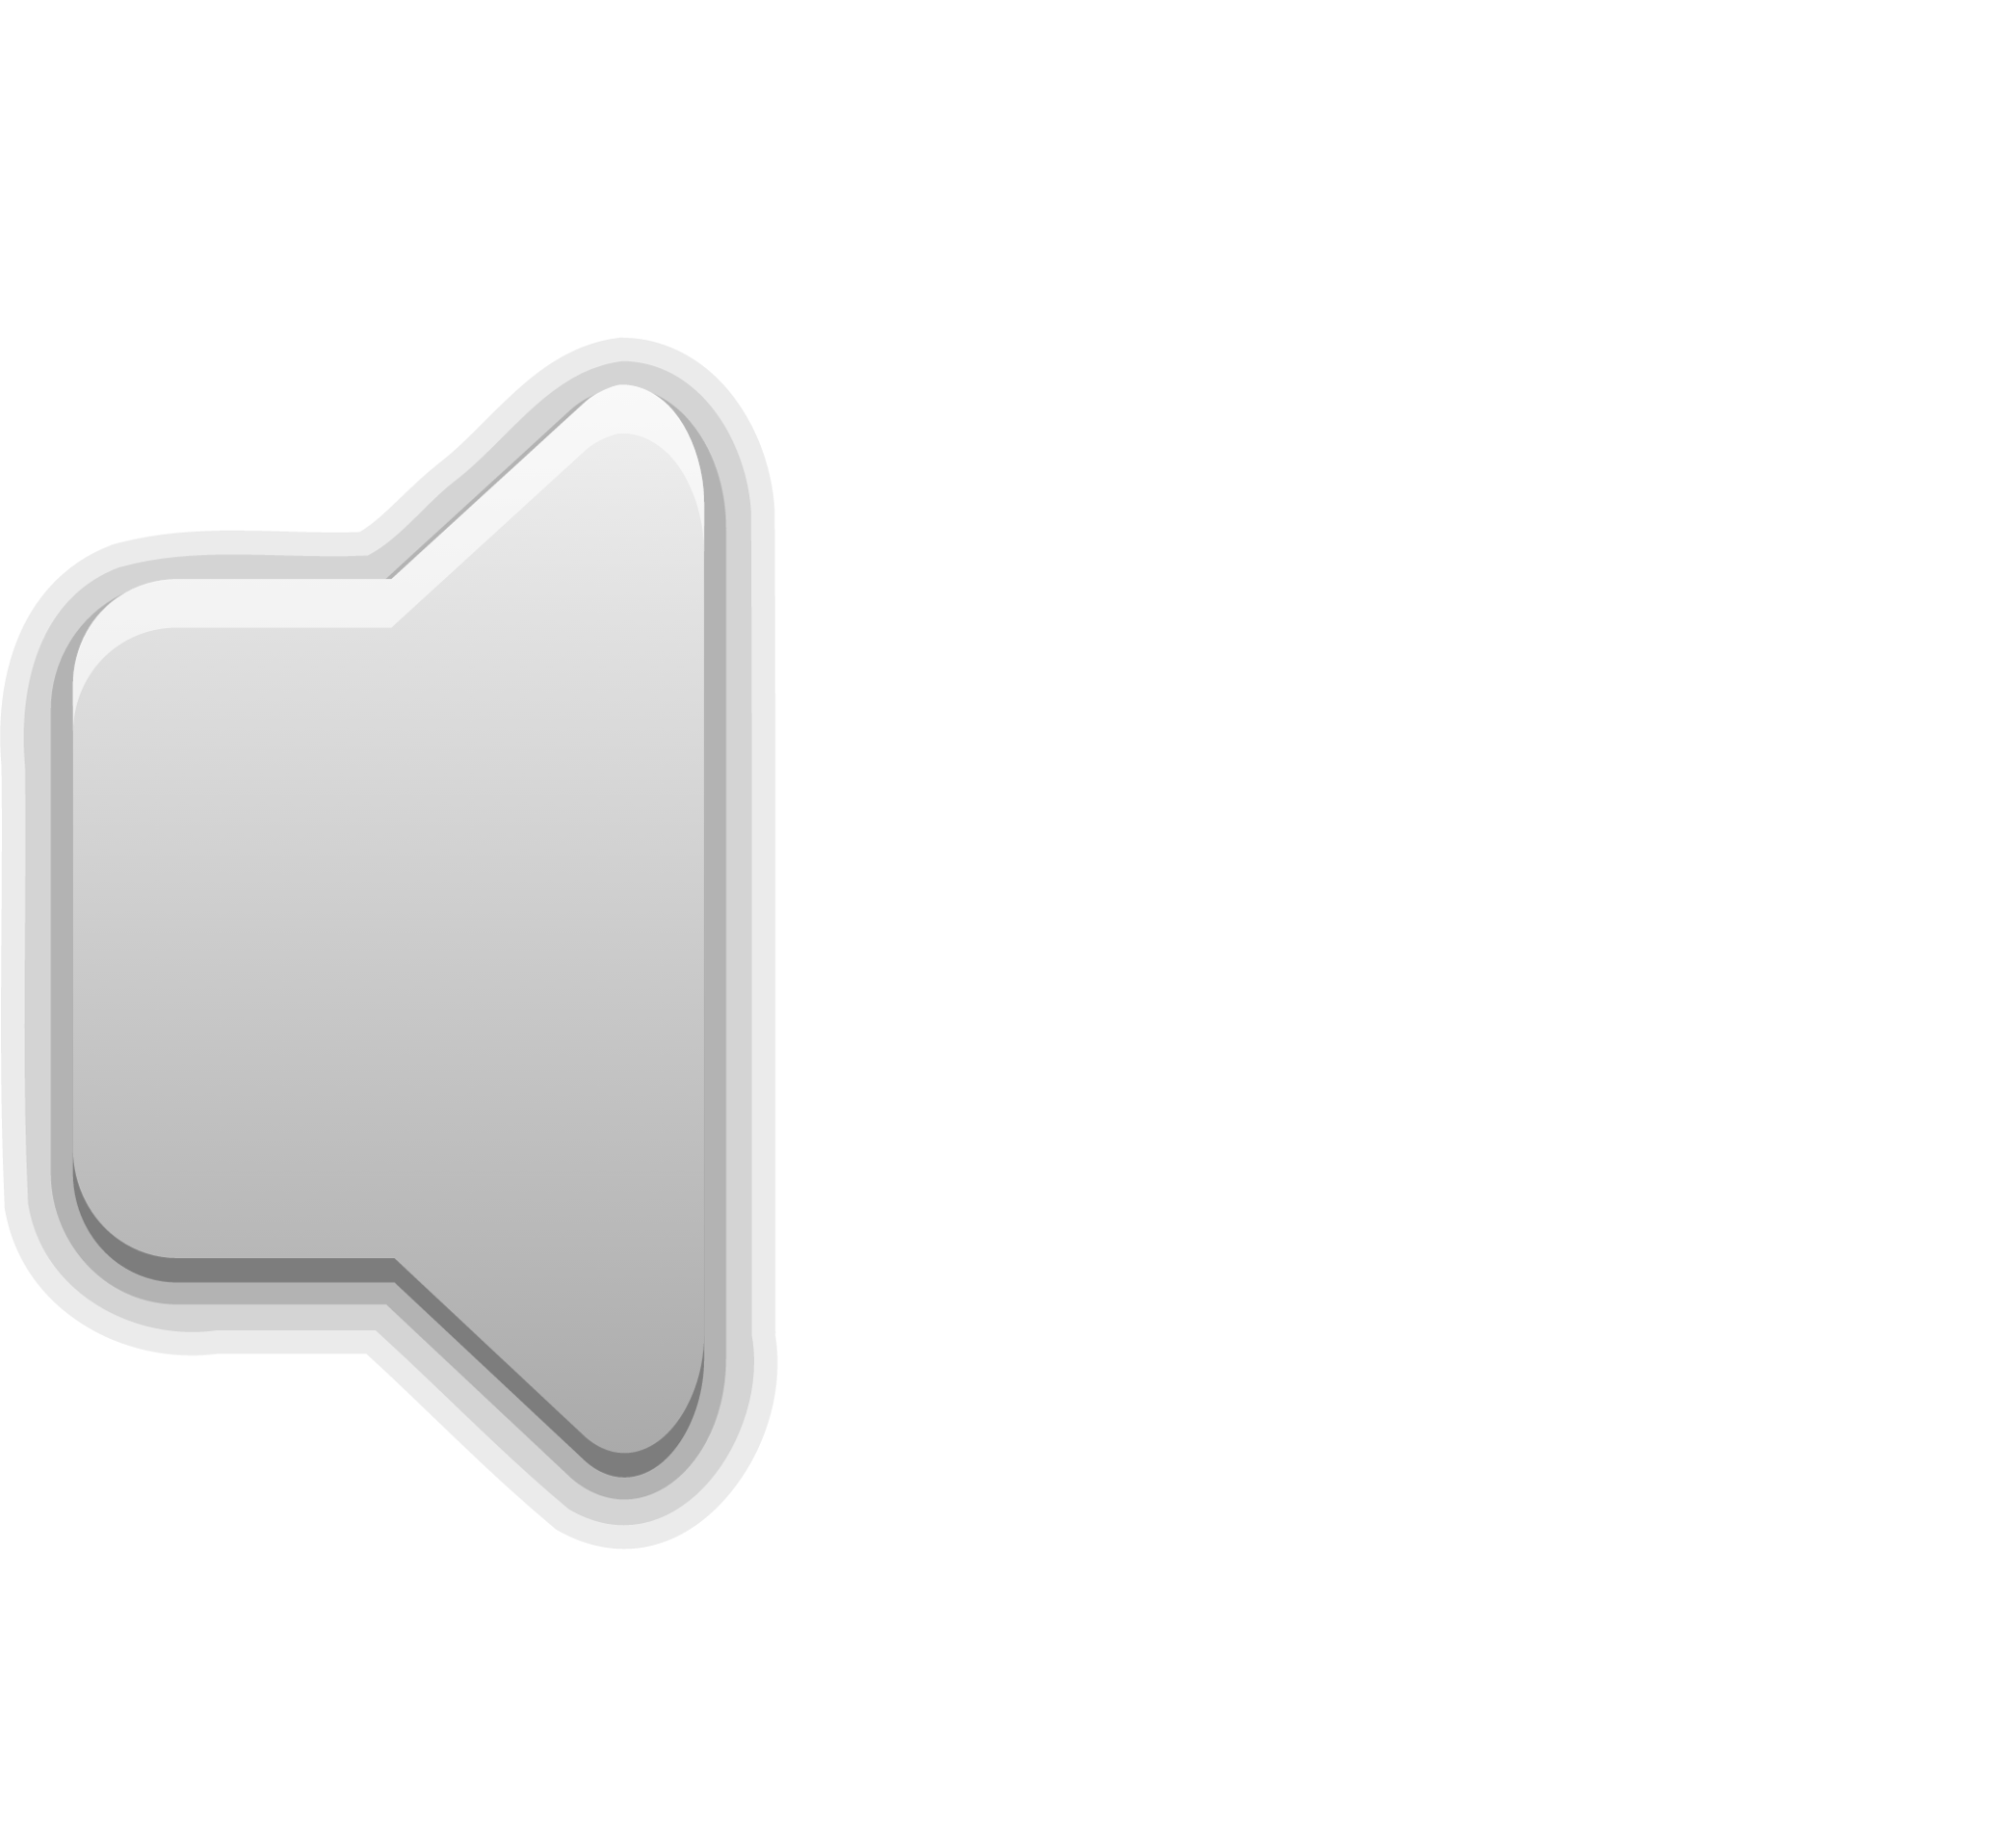 audio volume zero panel icon